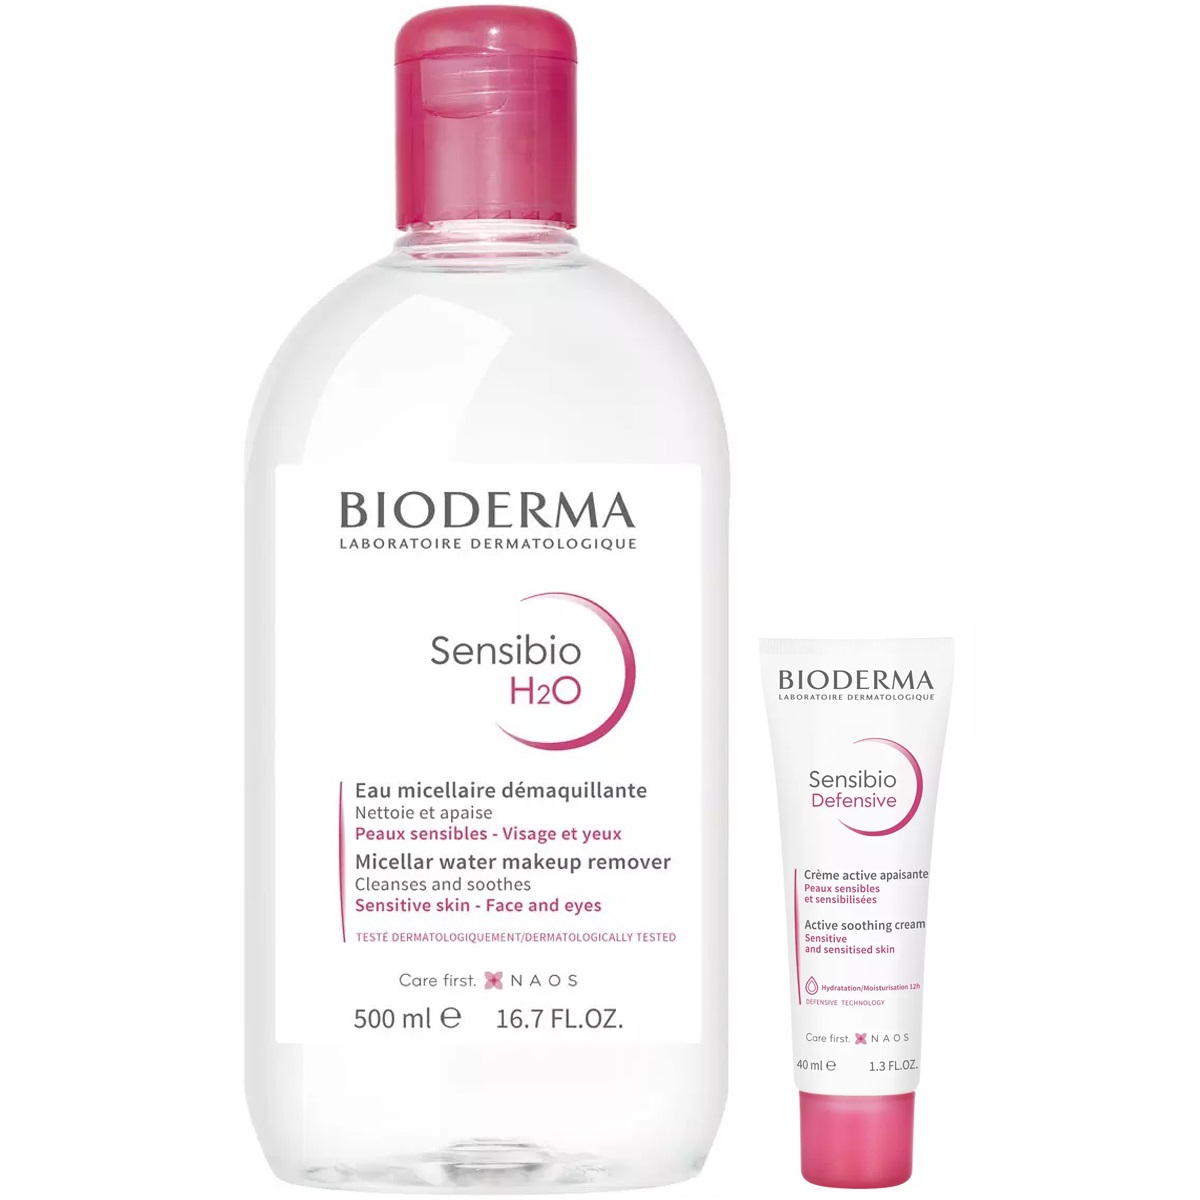 Bioderma Набор для чувствительной кожи: мицеллярная вода, 500 мл + крем, 40 мл (Bioderma, Sensibio) bioderma легкий крем для чувствительной кожи defensive 40 мл bioderma sensibio